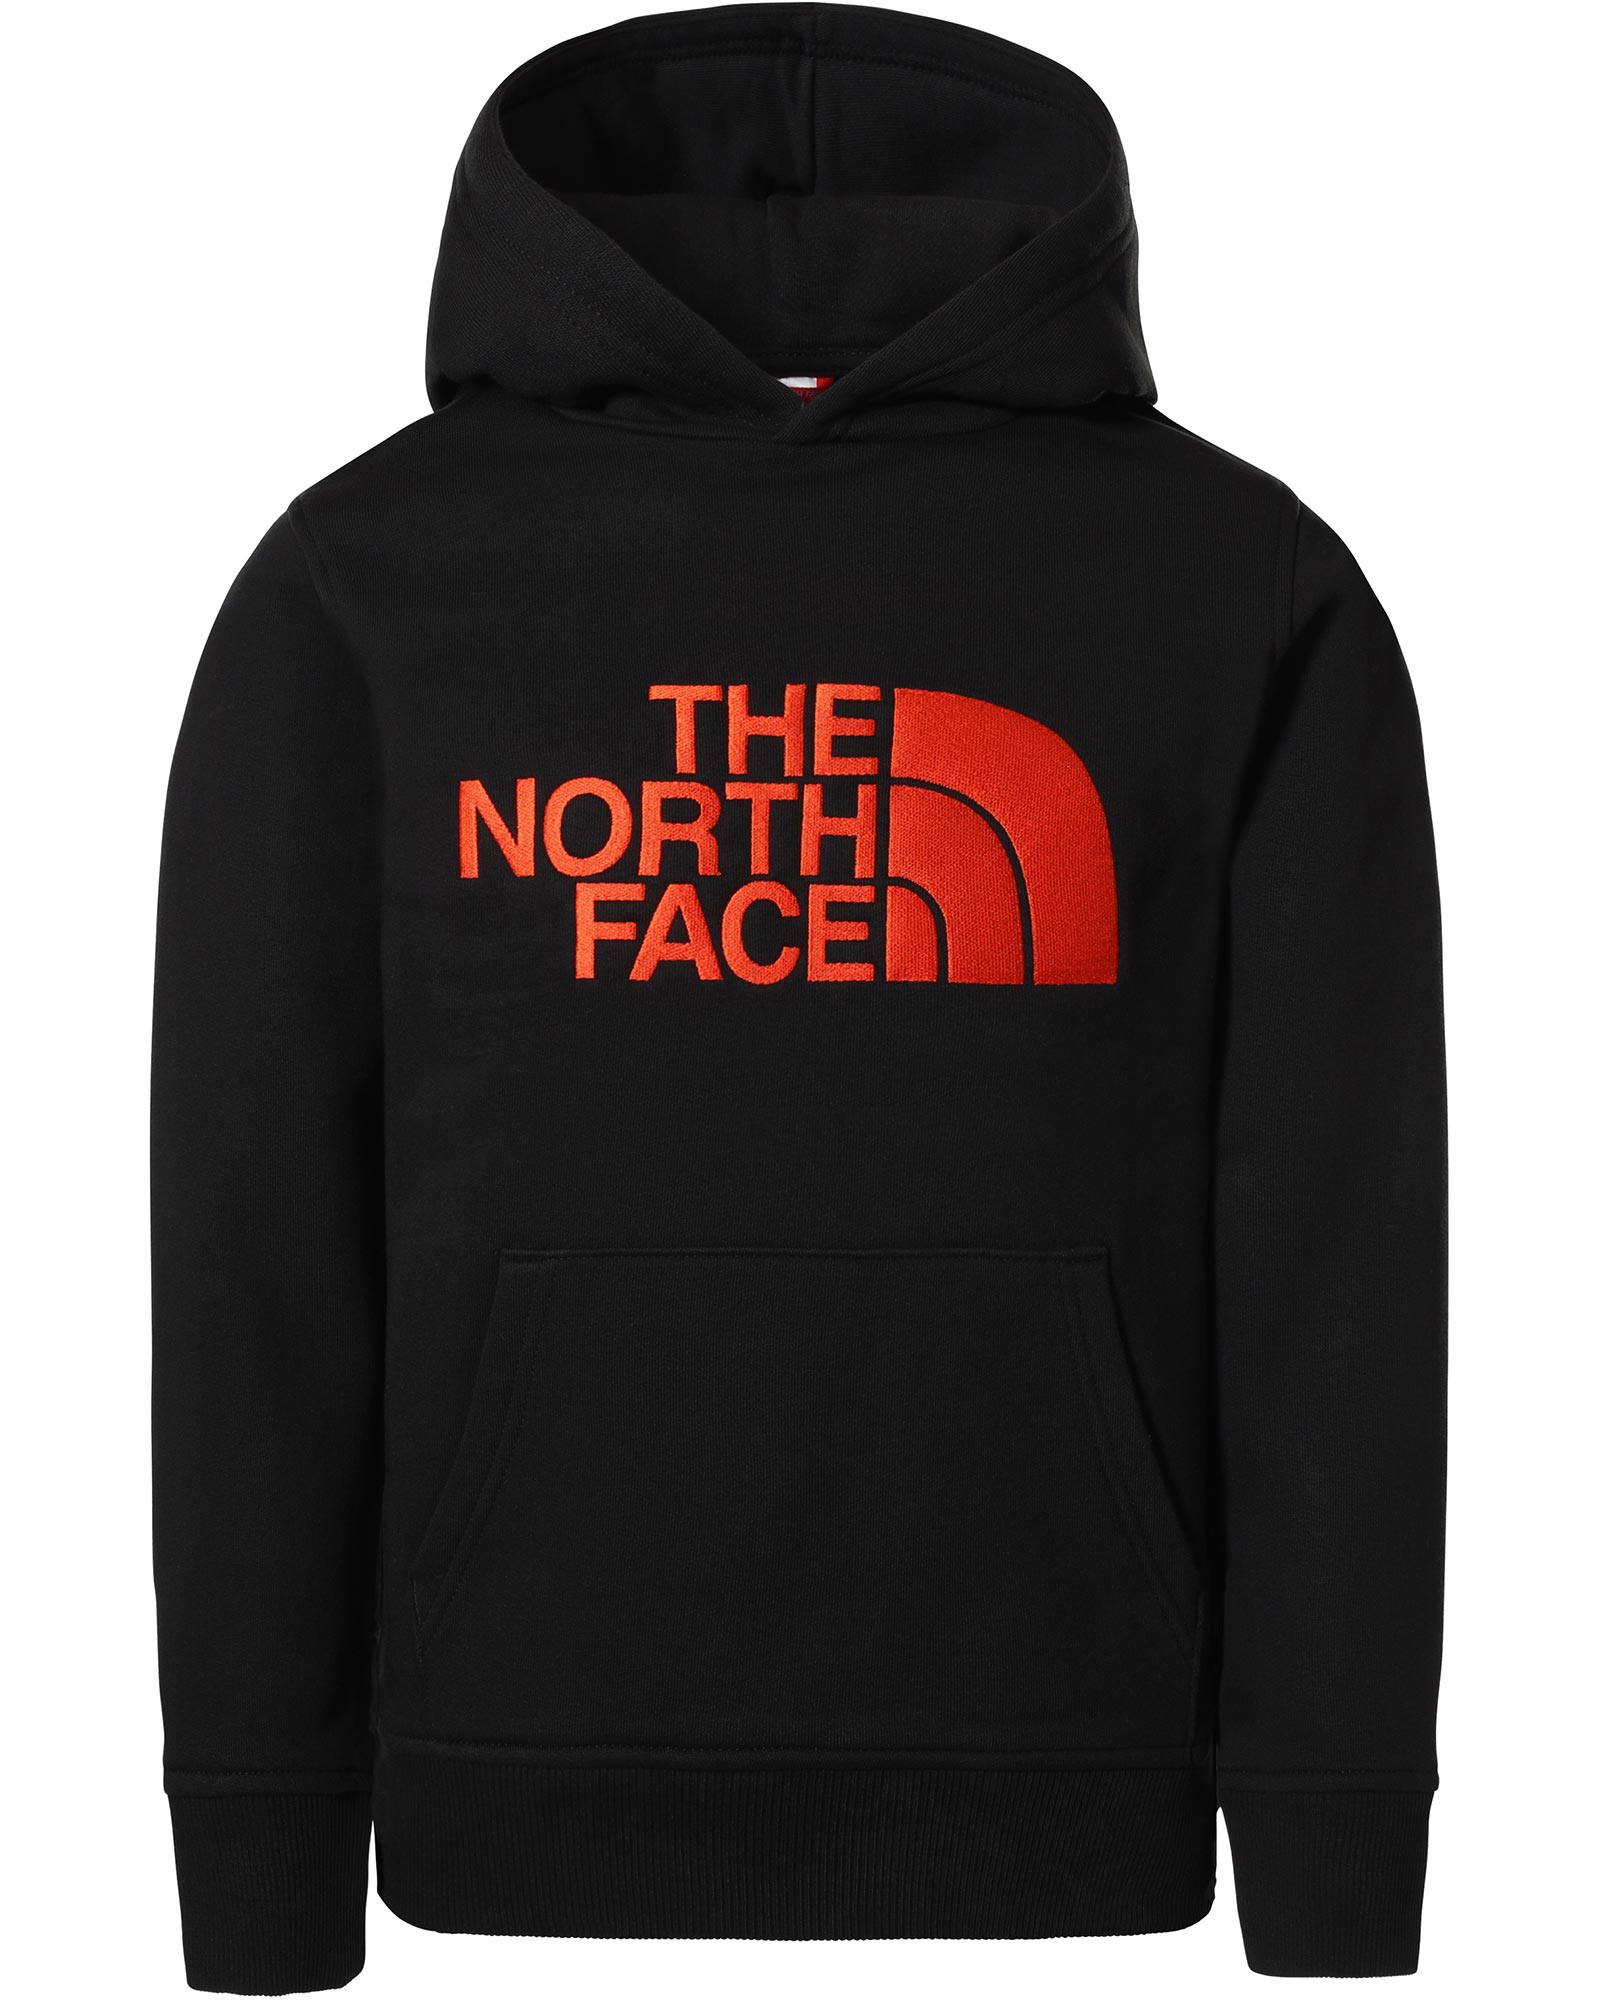 The North Face Drew Peak Kids Hoodie